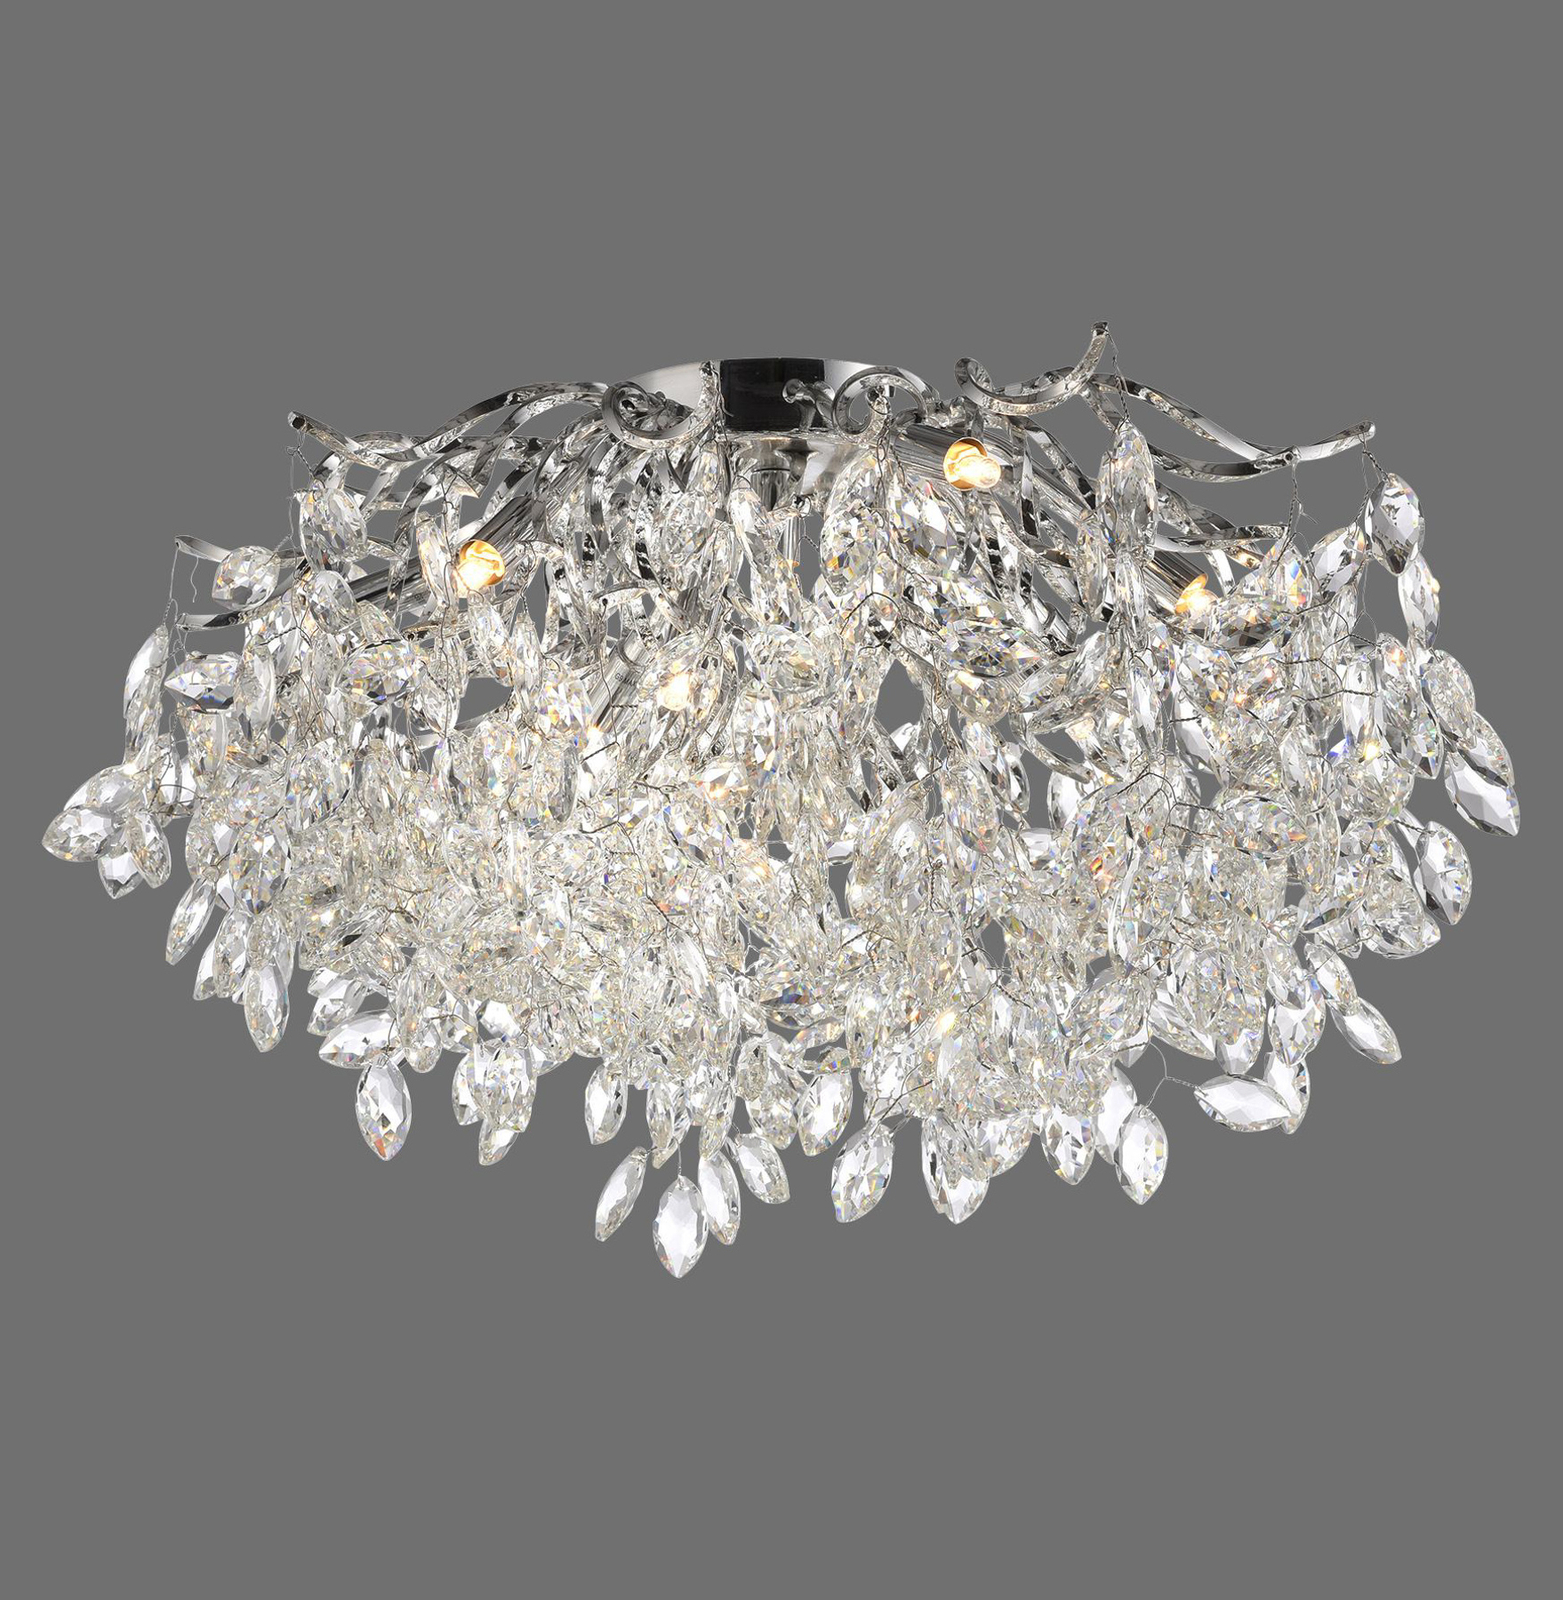 Paul Neuhaus Ricicle loftslampe, krystalpendel, Ø 60 cm